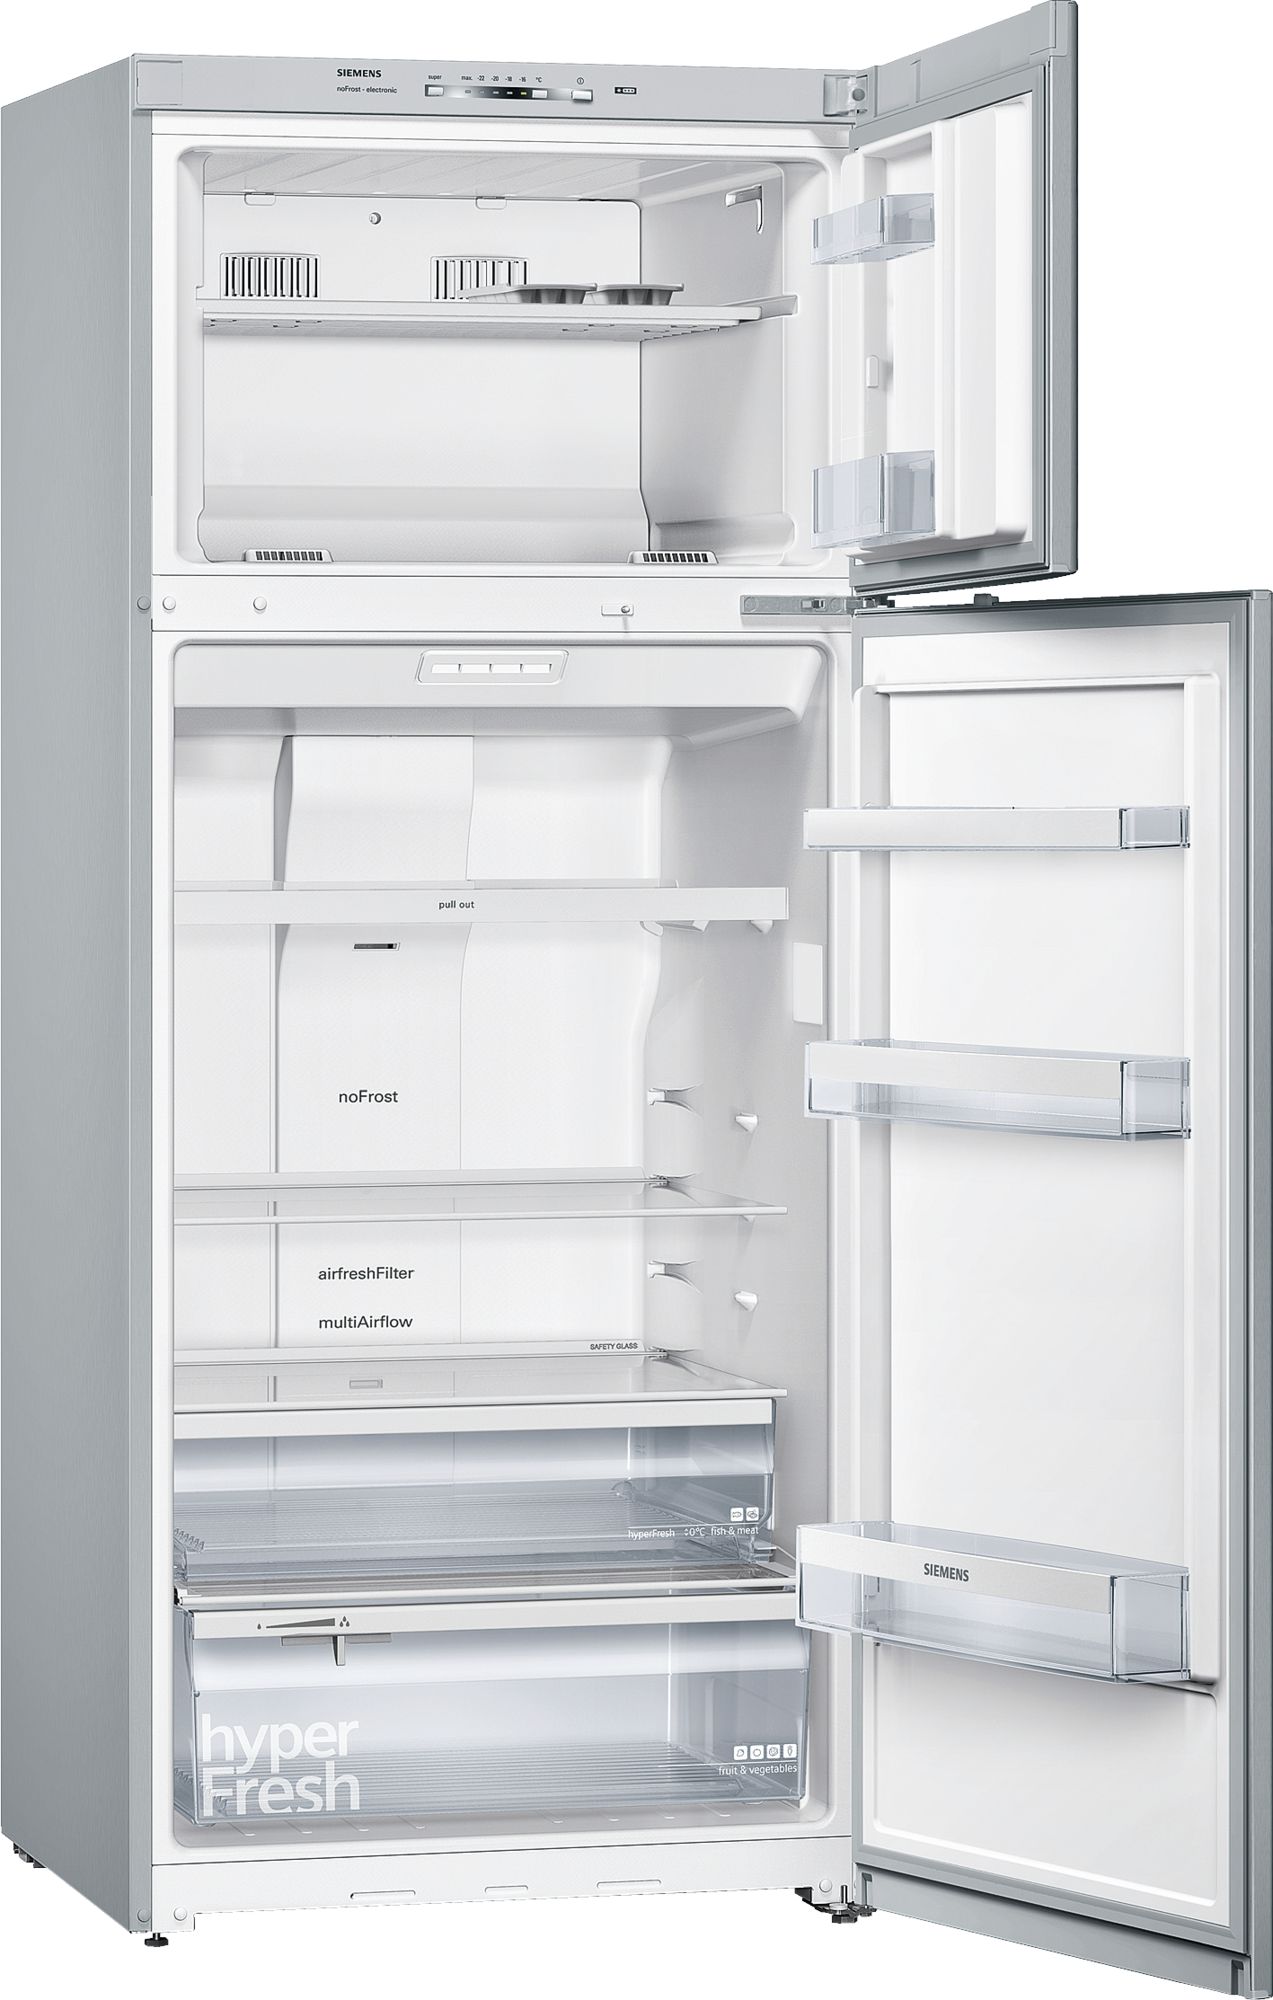 iQ300 Üstten Donduruculu Buzdolabı Inox görünümlü